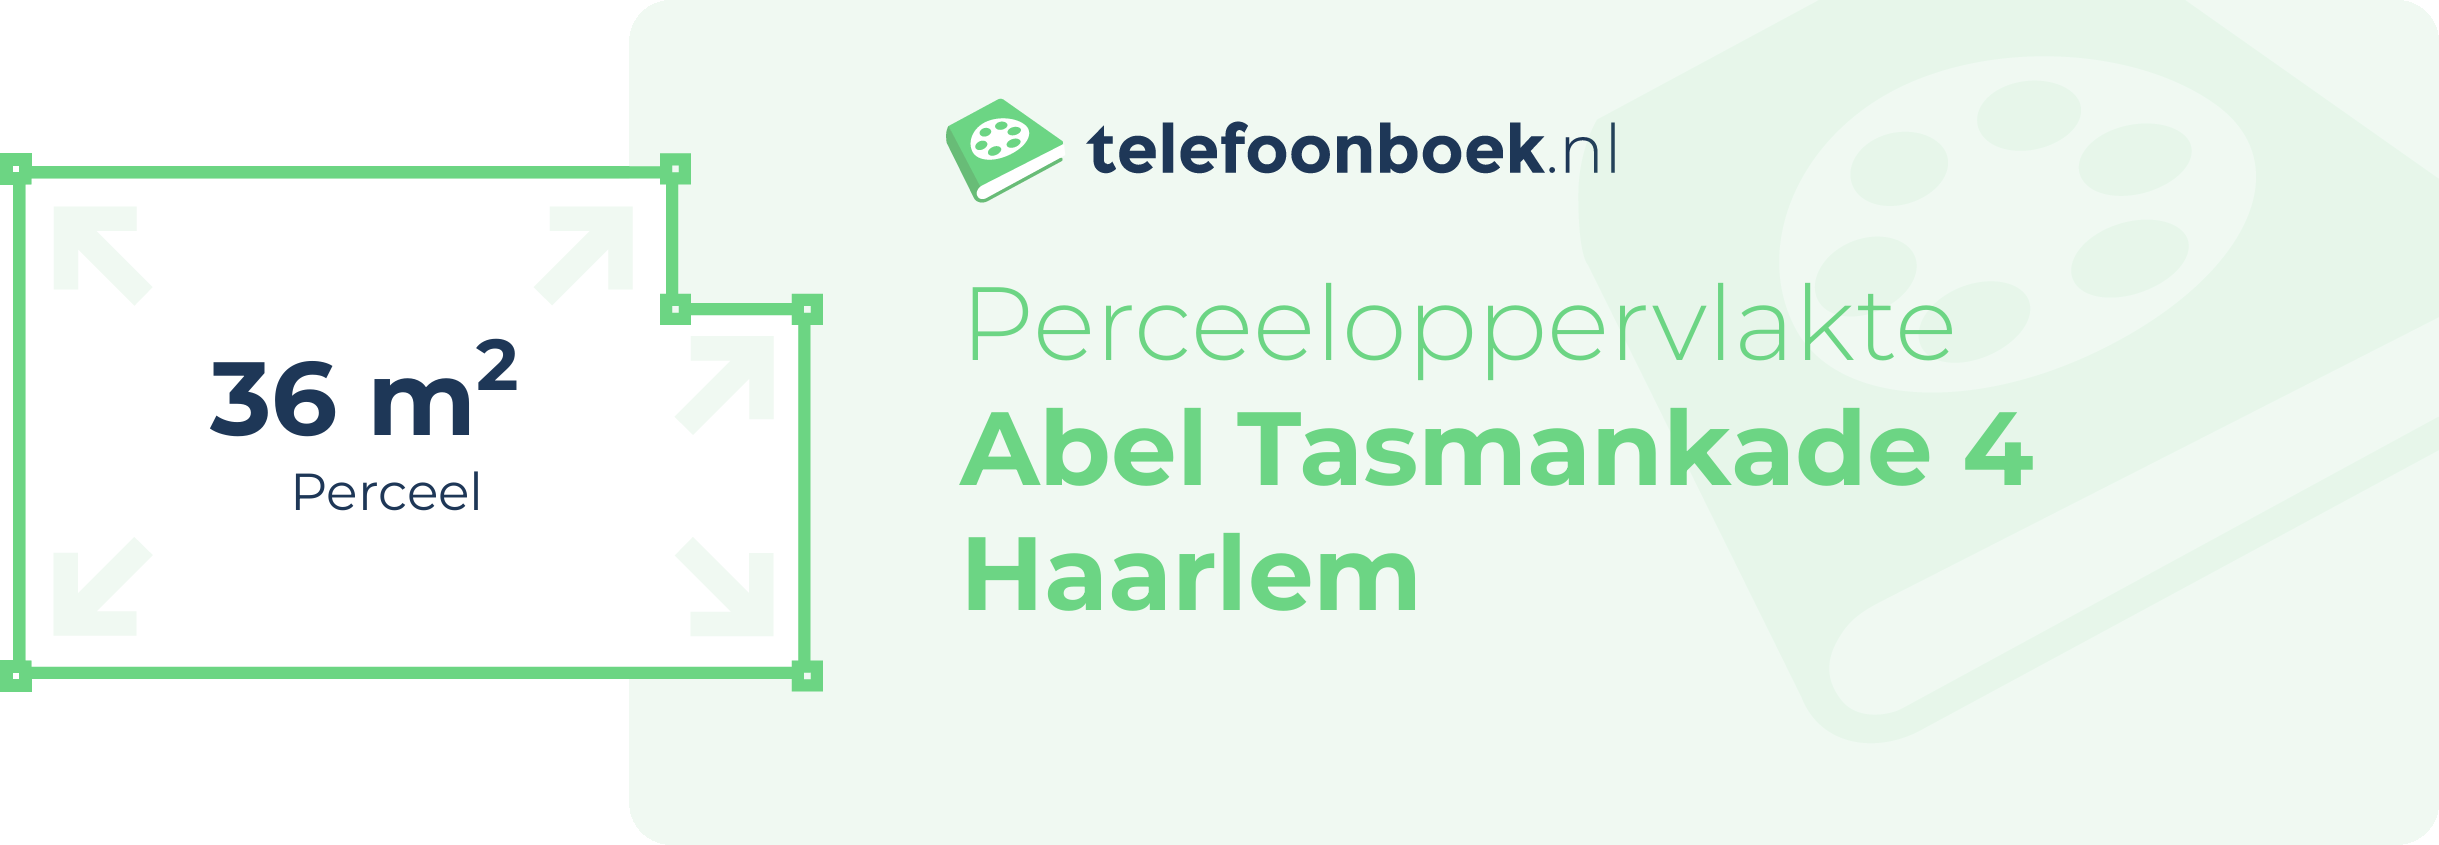 Perceeloppervlakte Abel Tasmankade 4 Haarlem